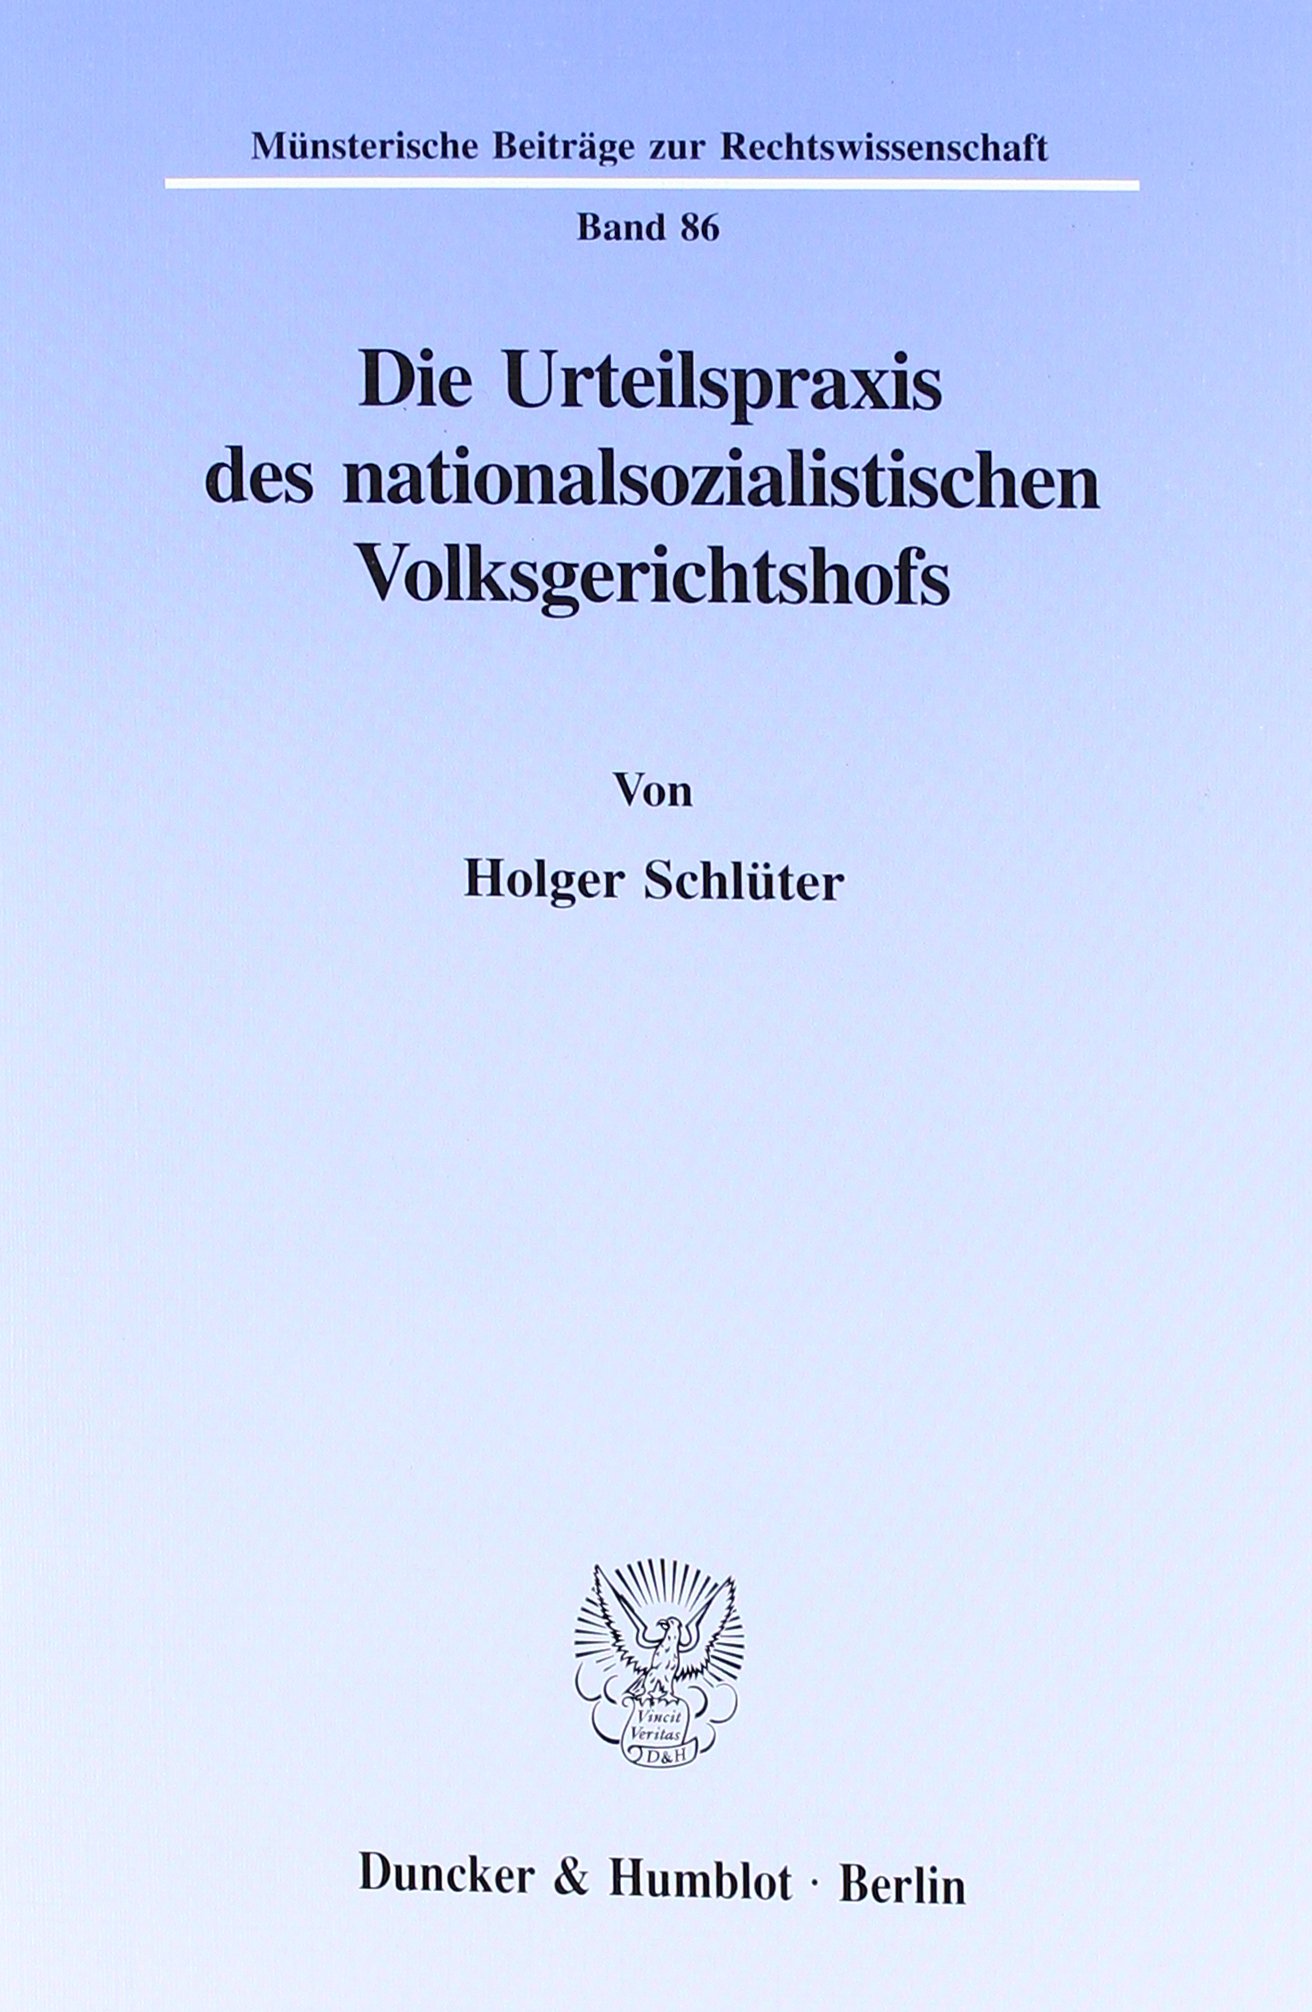 Die Urteilspraxis des nationalsozialistischen Volksgerichtshofs.: Dissertationsschrift (Münsterische Beiträge zur Rechtswissenschaft) - Schlüter, Holger